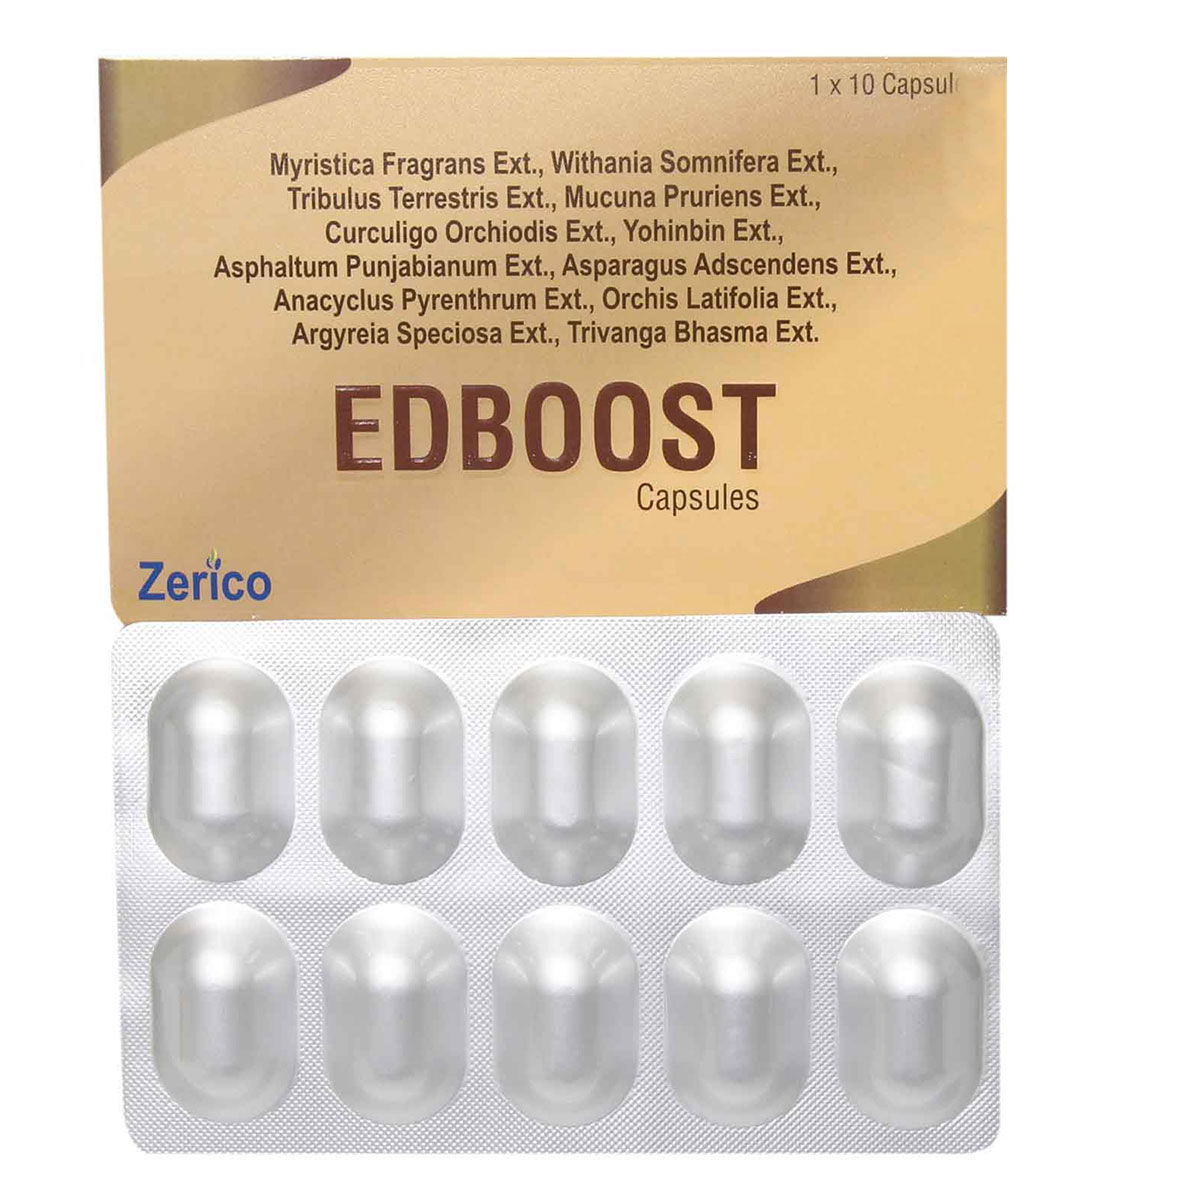 Buy Zerico Edboost, 10 Capsules Online